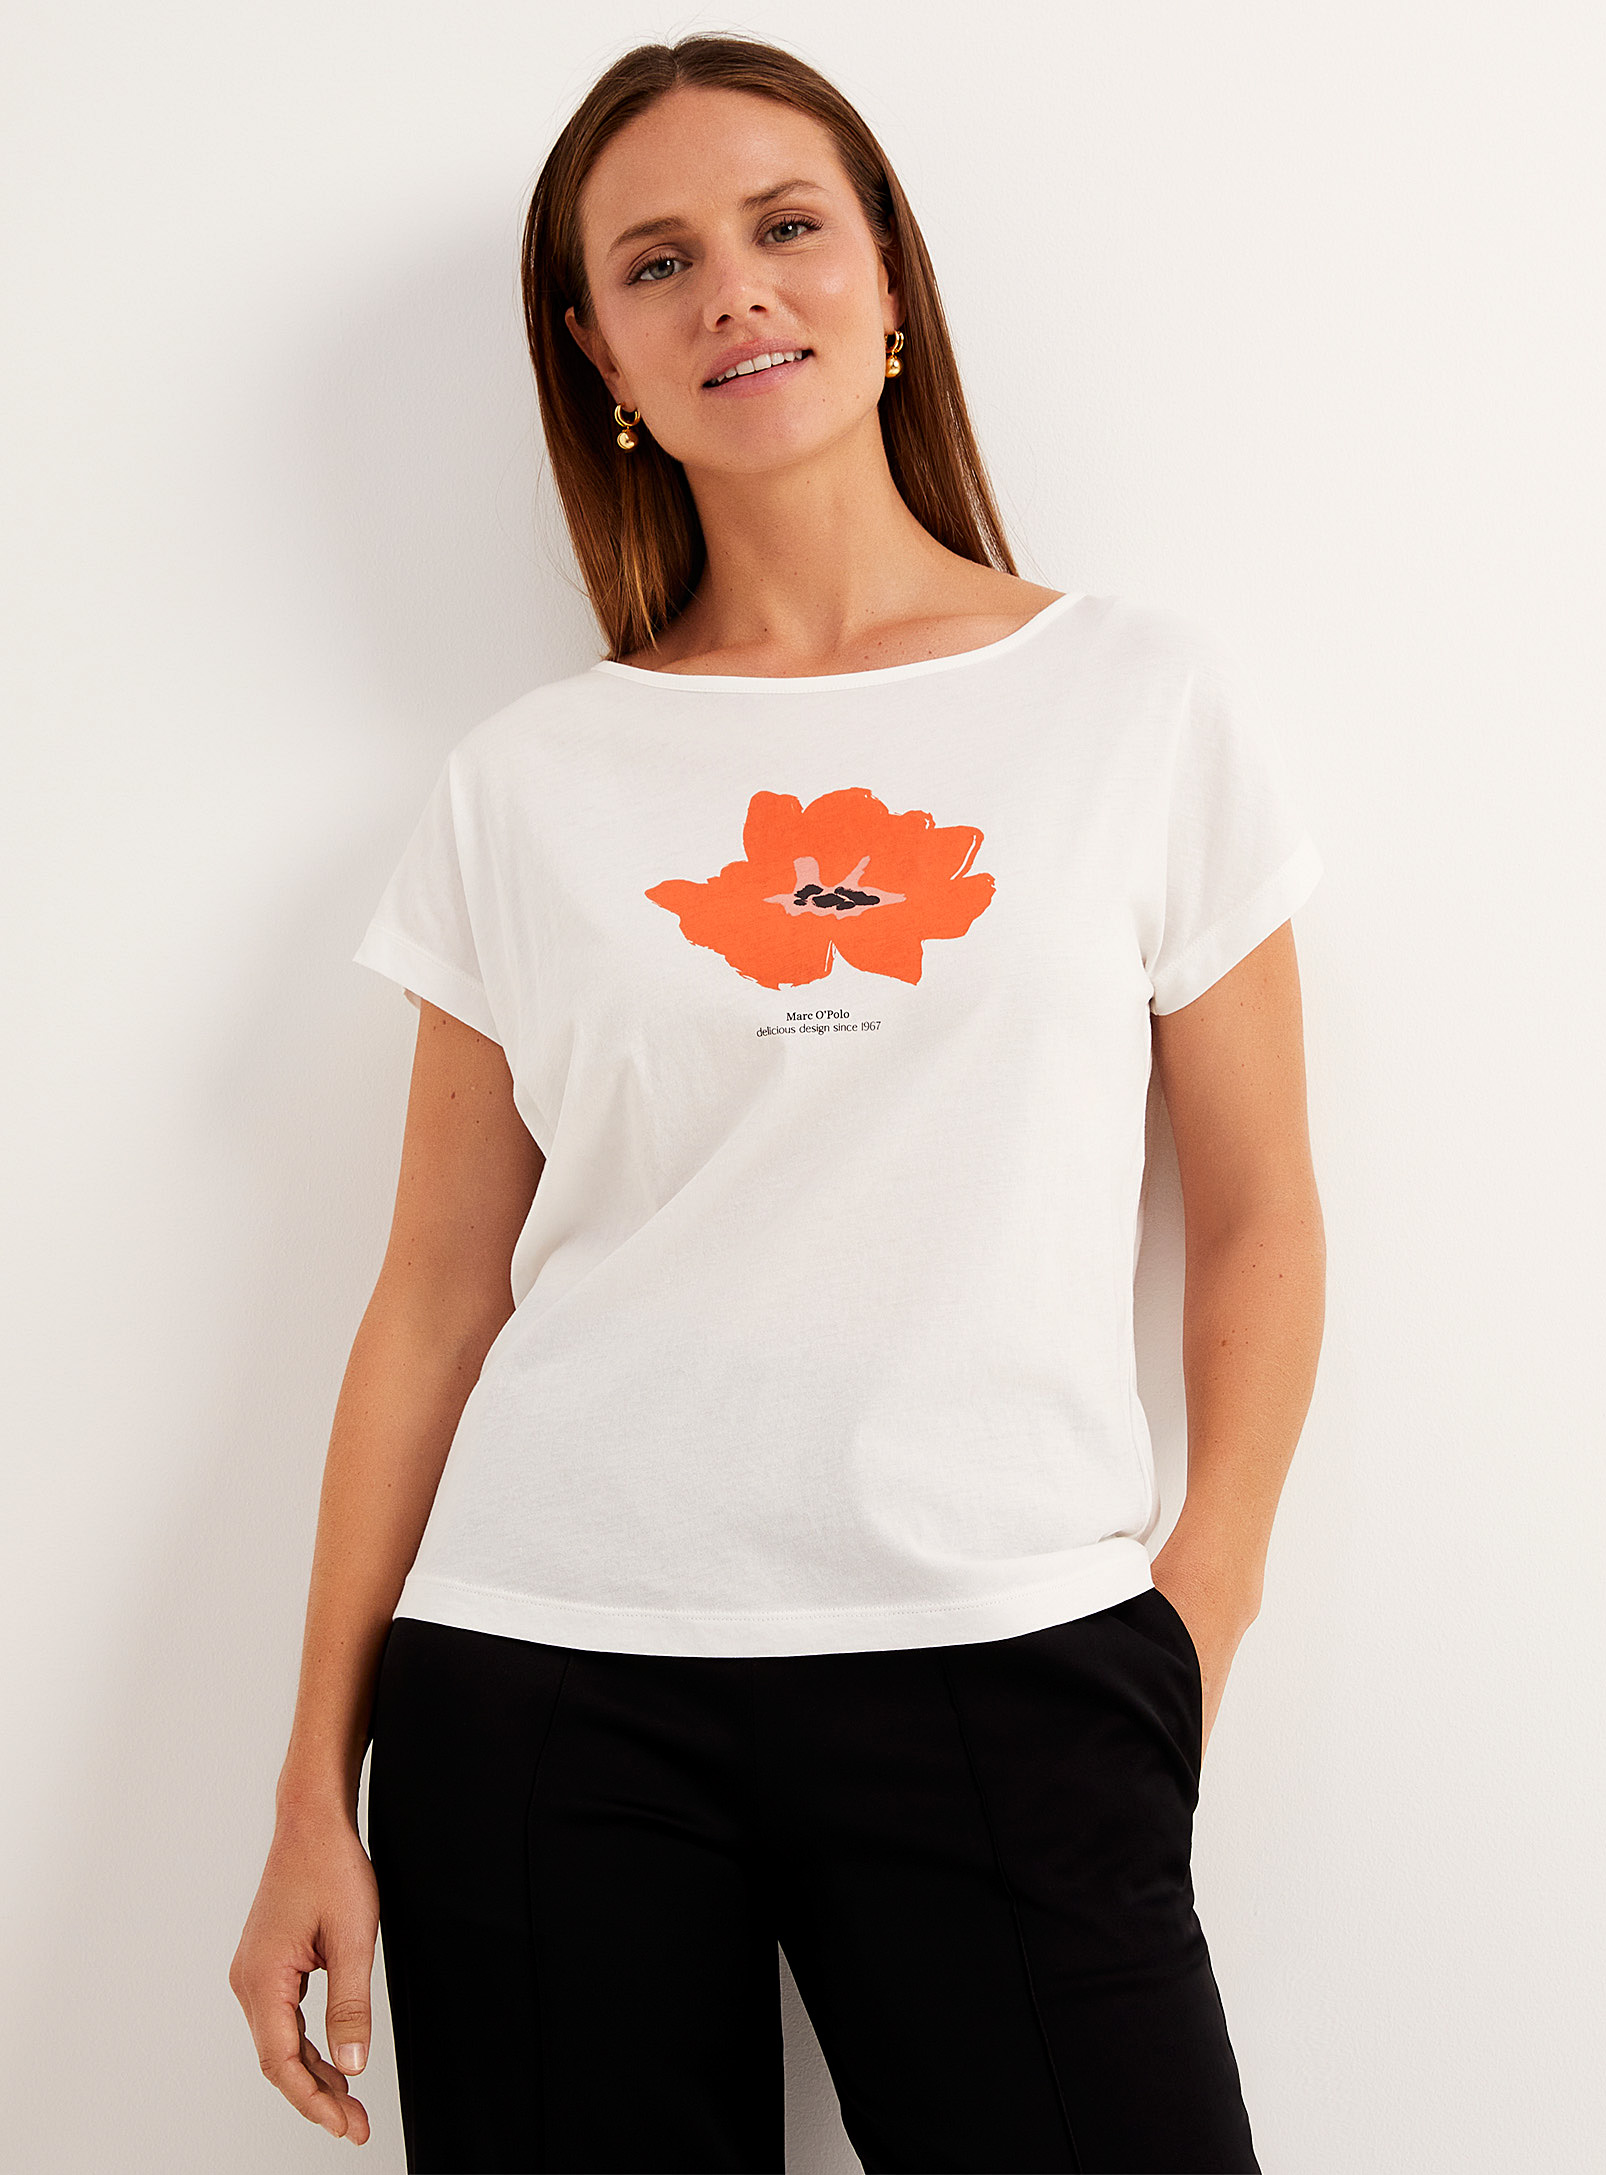 Marc O'Polo Shirt - Women's Signature flower lightweight T-shirt